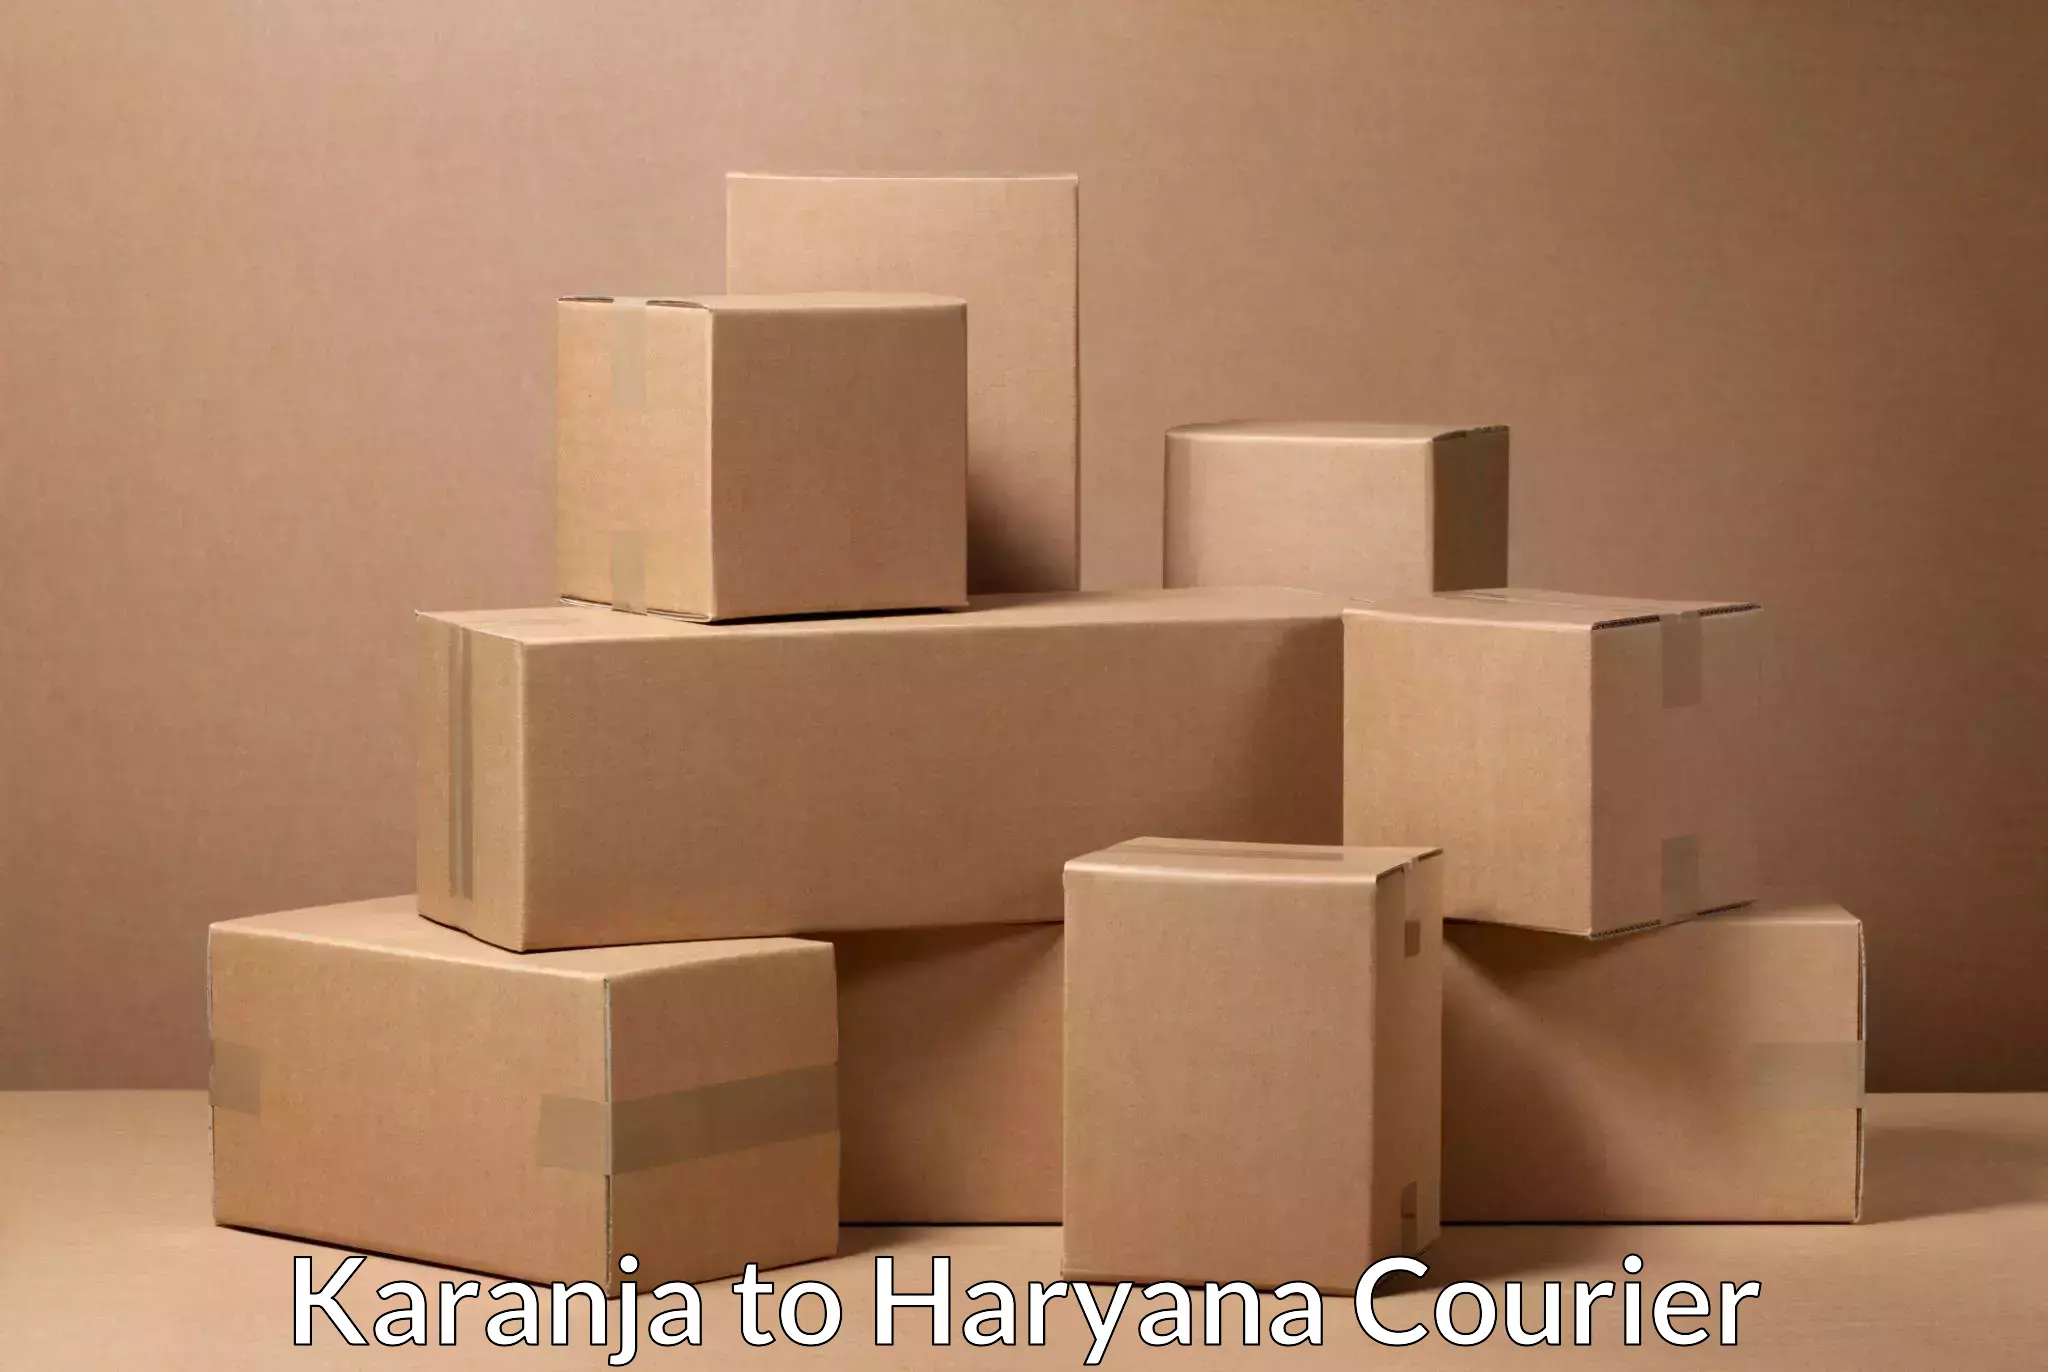 Express mail service Karanja to Haryana